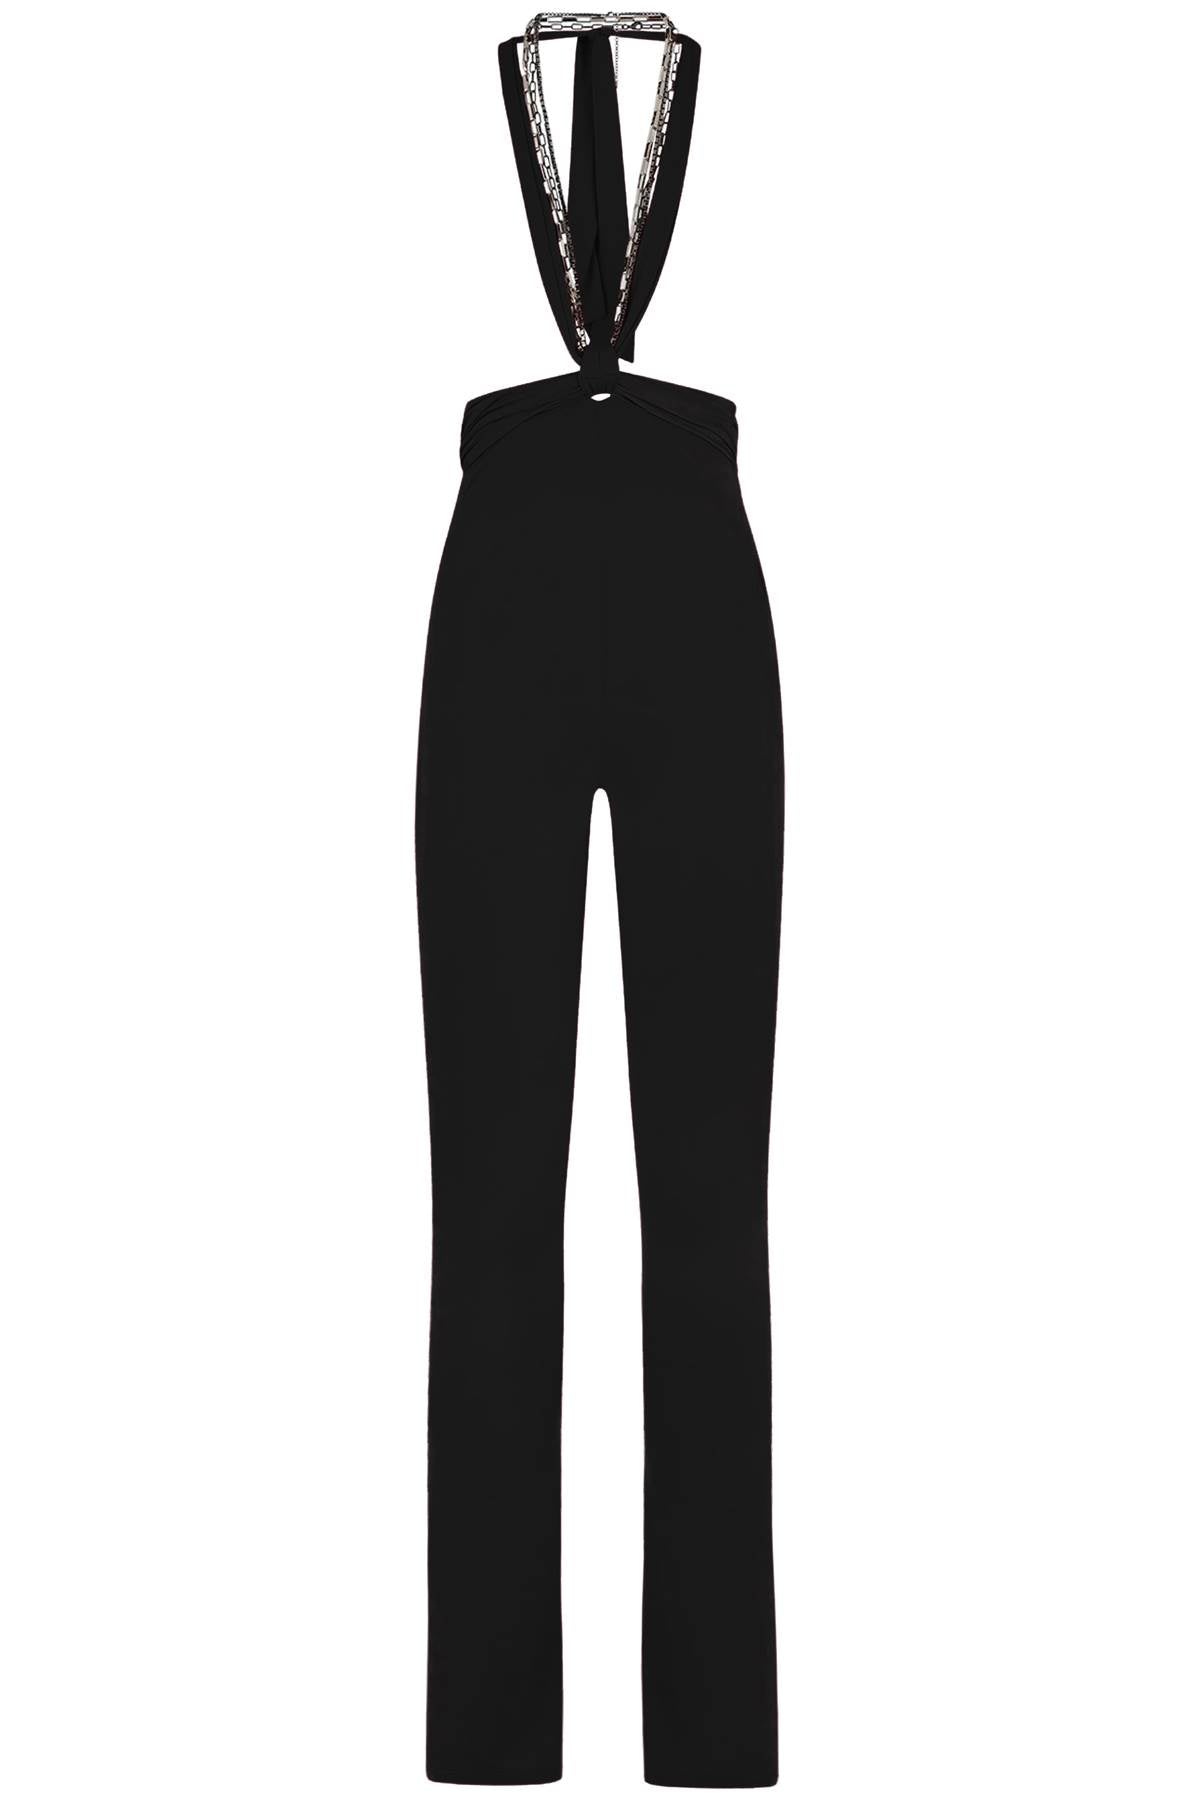 高腰镂空连帽裤，内搭自绑链条与蝴蝶结设计